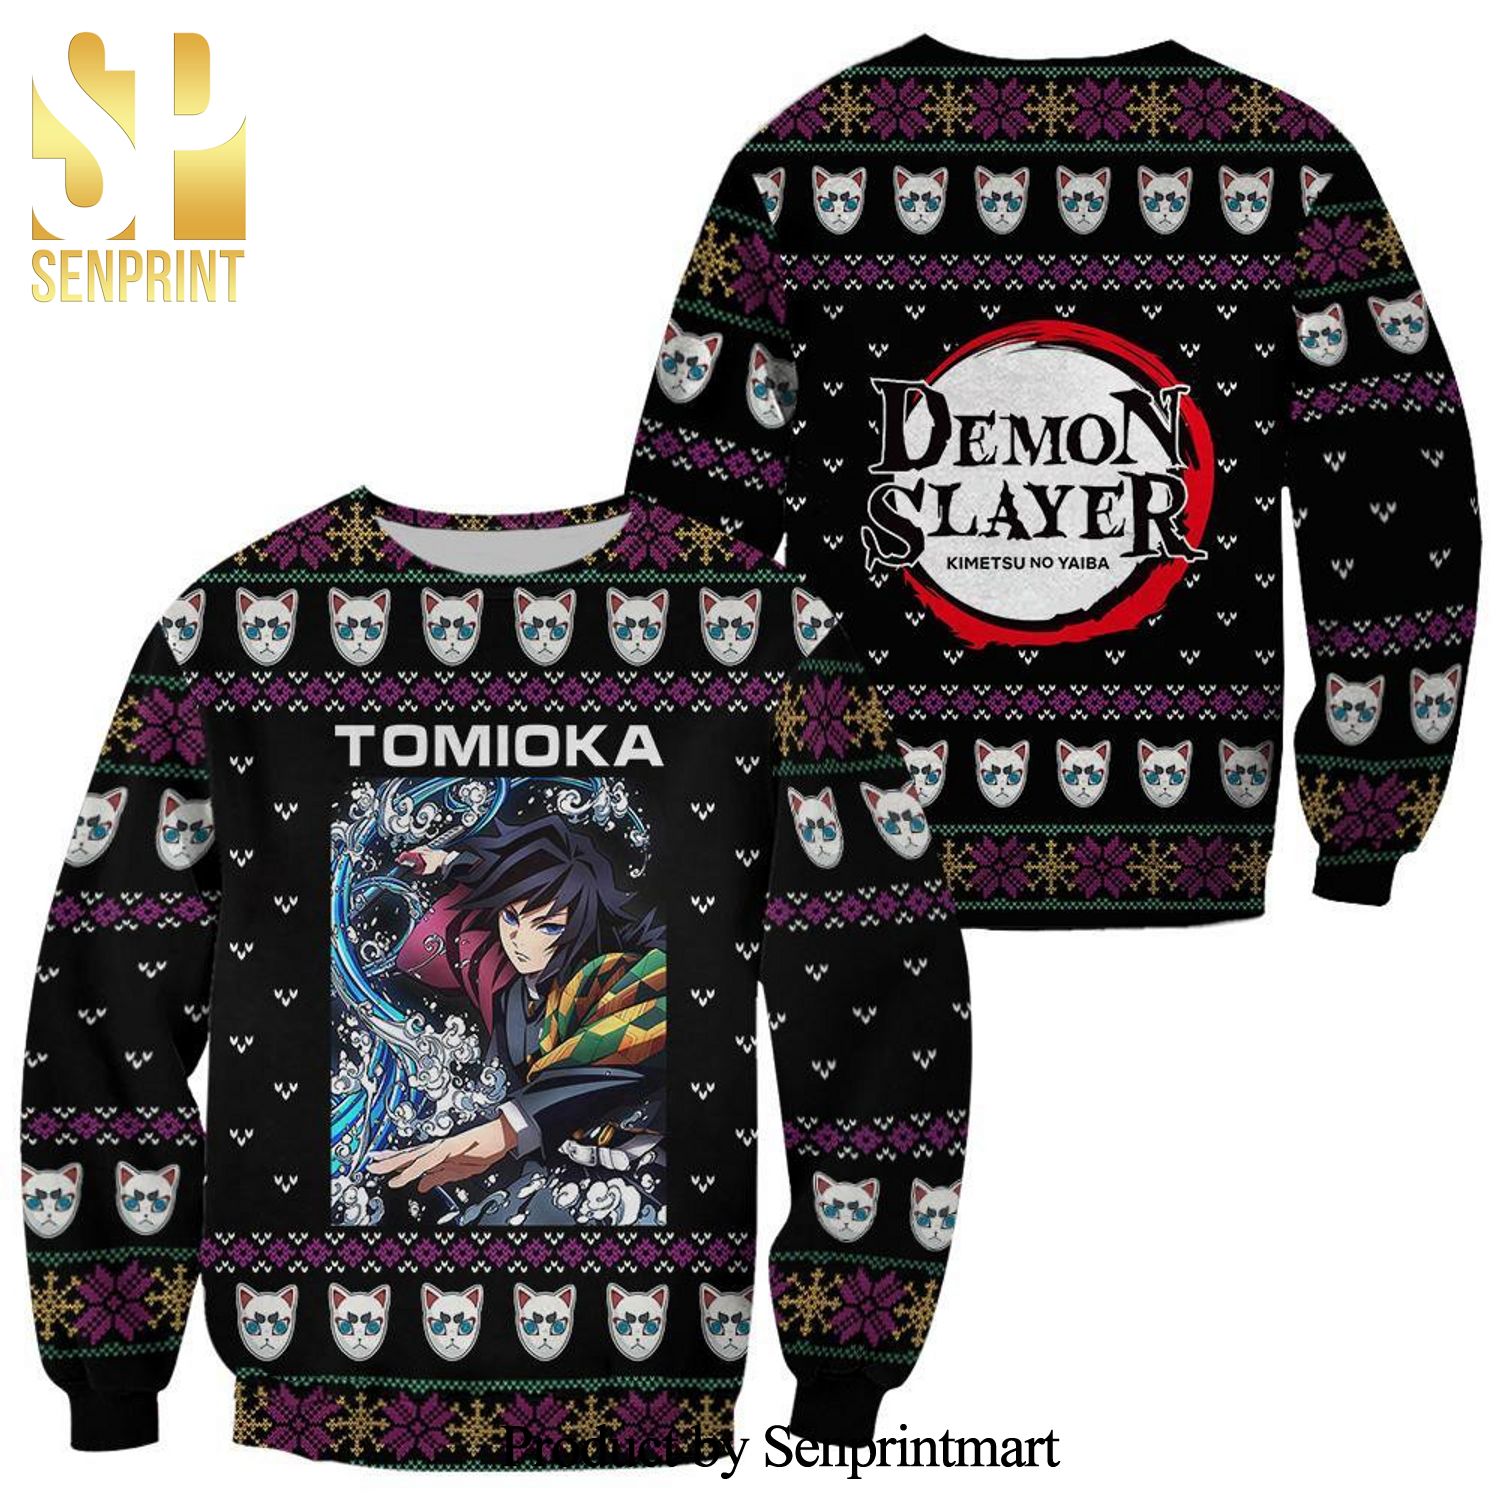 Giyu Tomioka Demon Slayer Anime Knitted Ugly Christmas Sweater